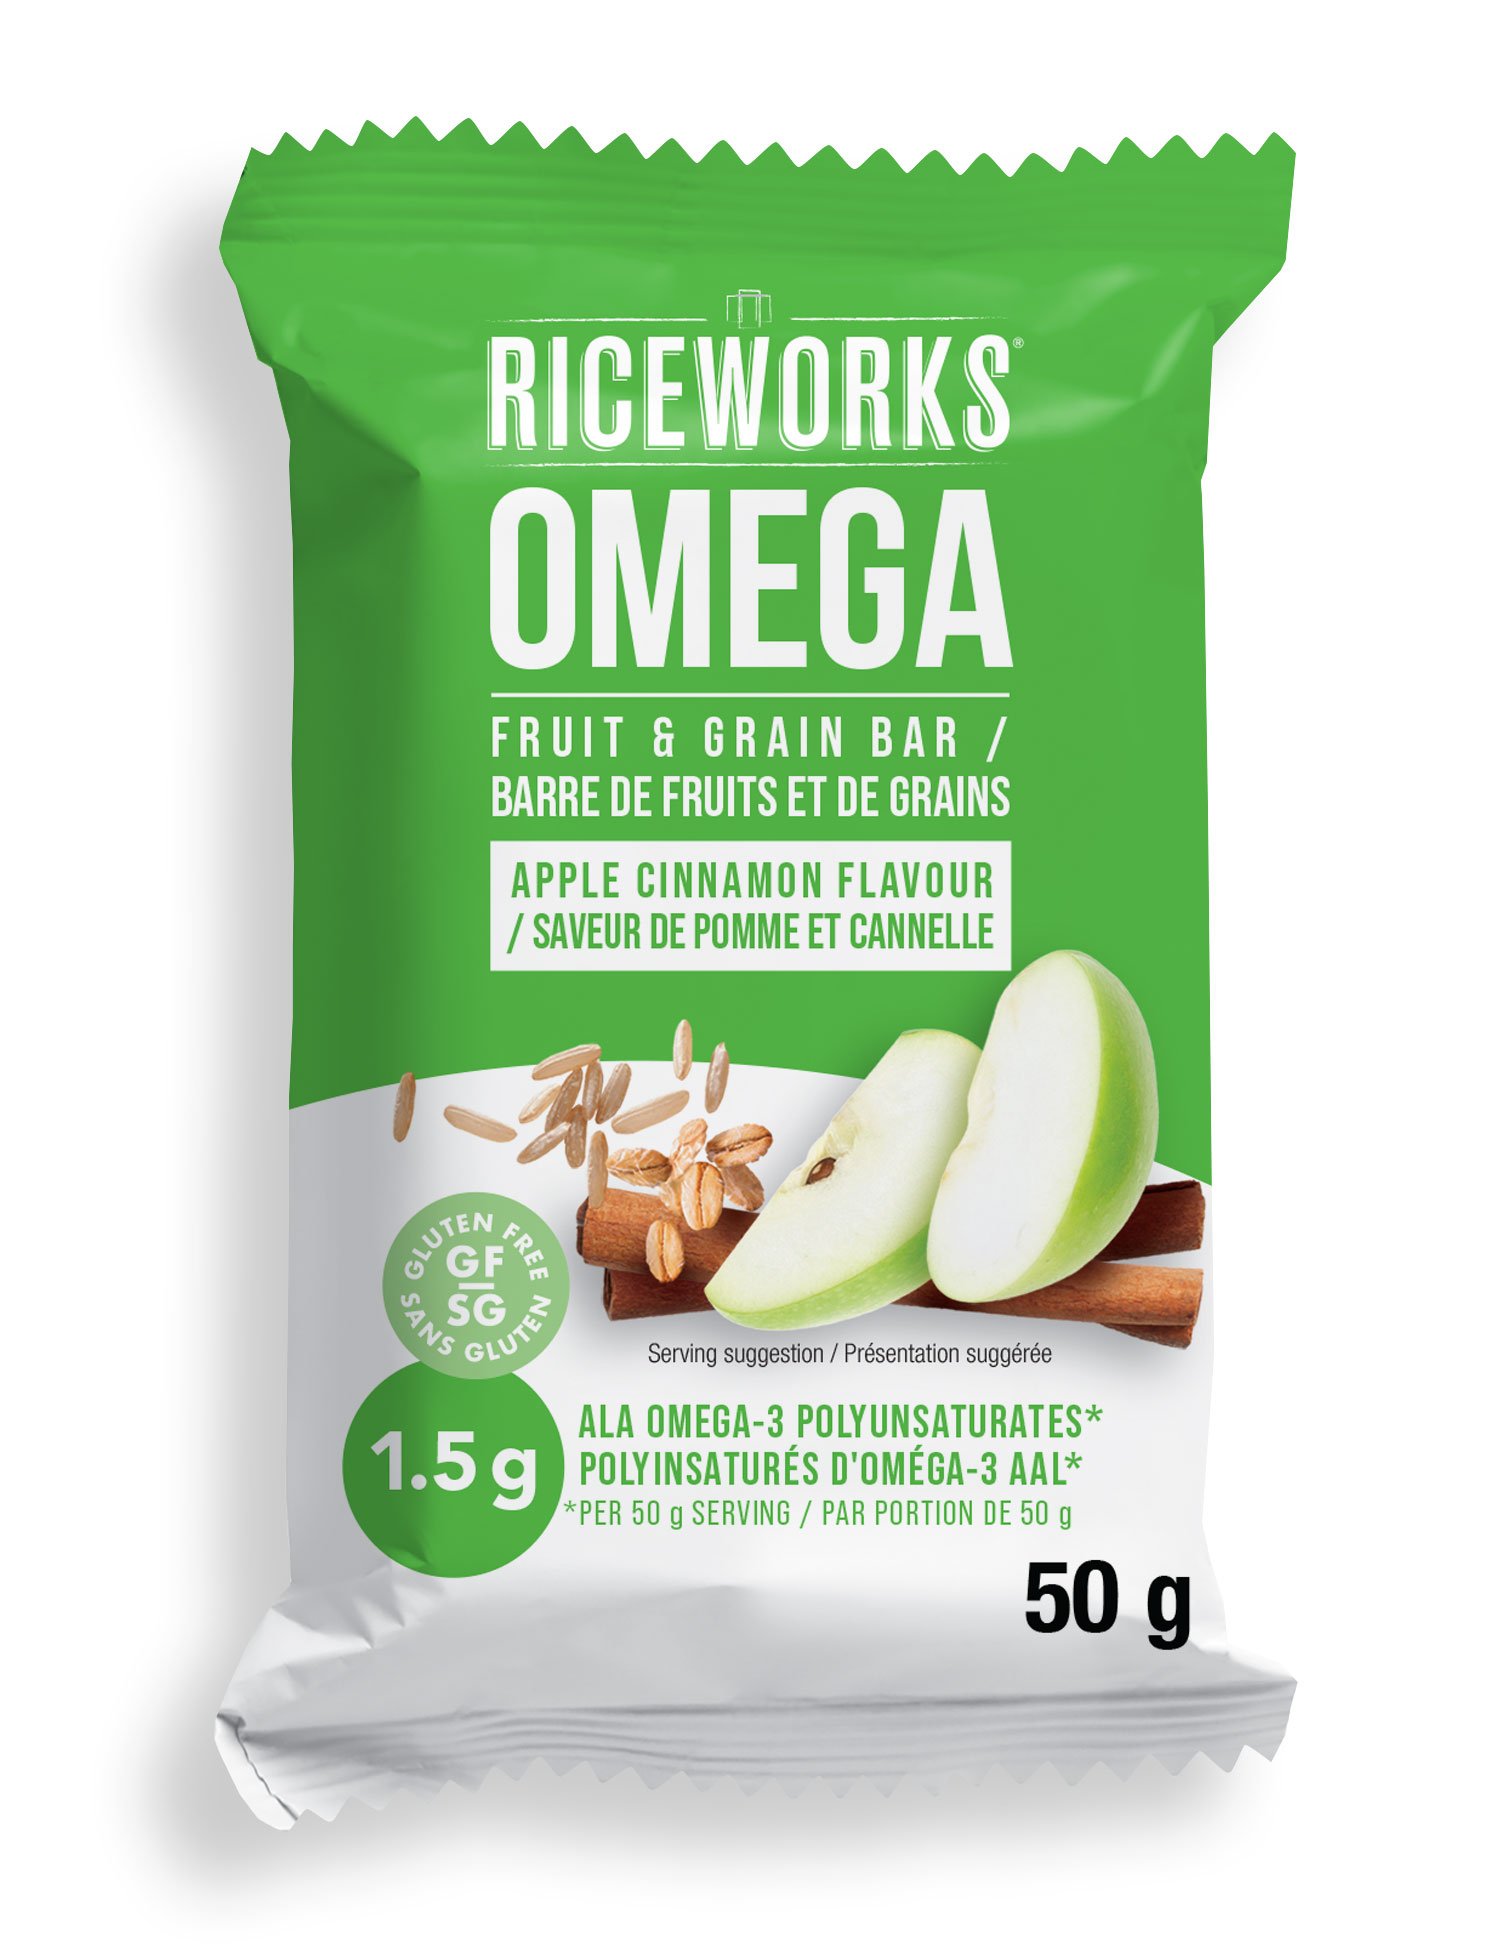 Riceworks Omega - Fruit & Grain Bar / Barre de fruits et de grains - Apple Cinnamon Flavour / Saveur de pomme et cannelle